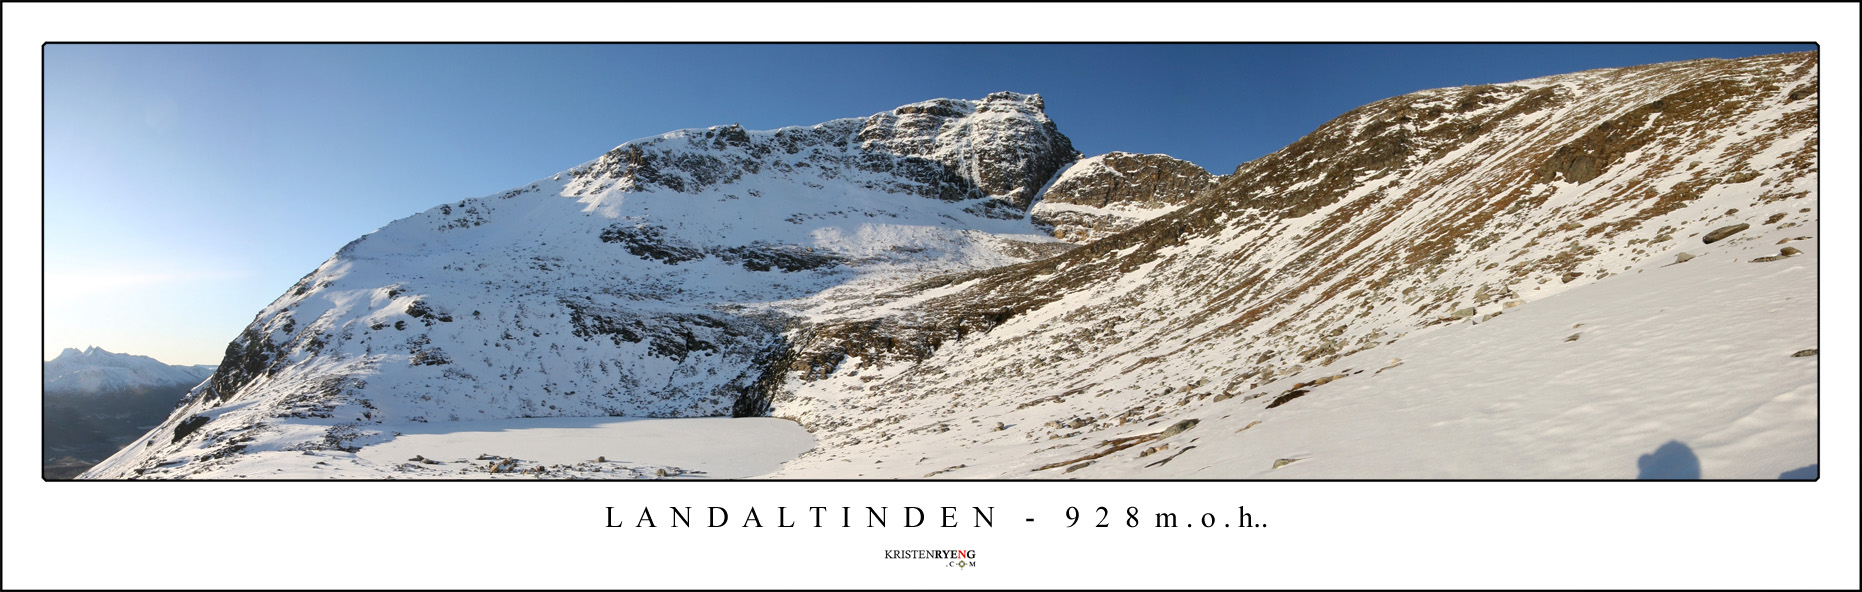 Panorama-Langdaltinden4.jpg - Utsikt fra Langdaltinden (928 moh). Her mot Finnheimfjellet på vei ned.